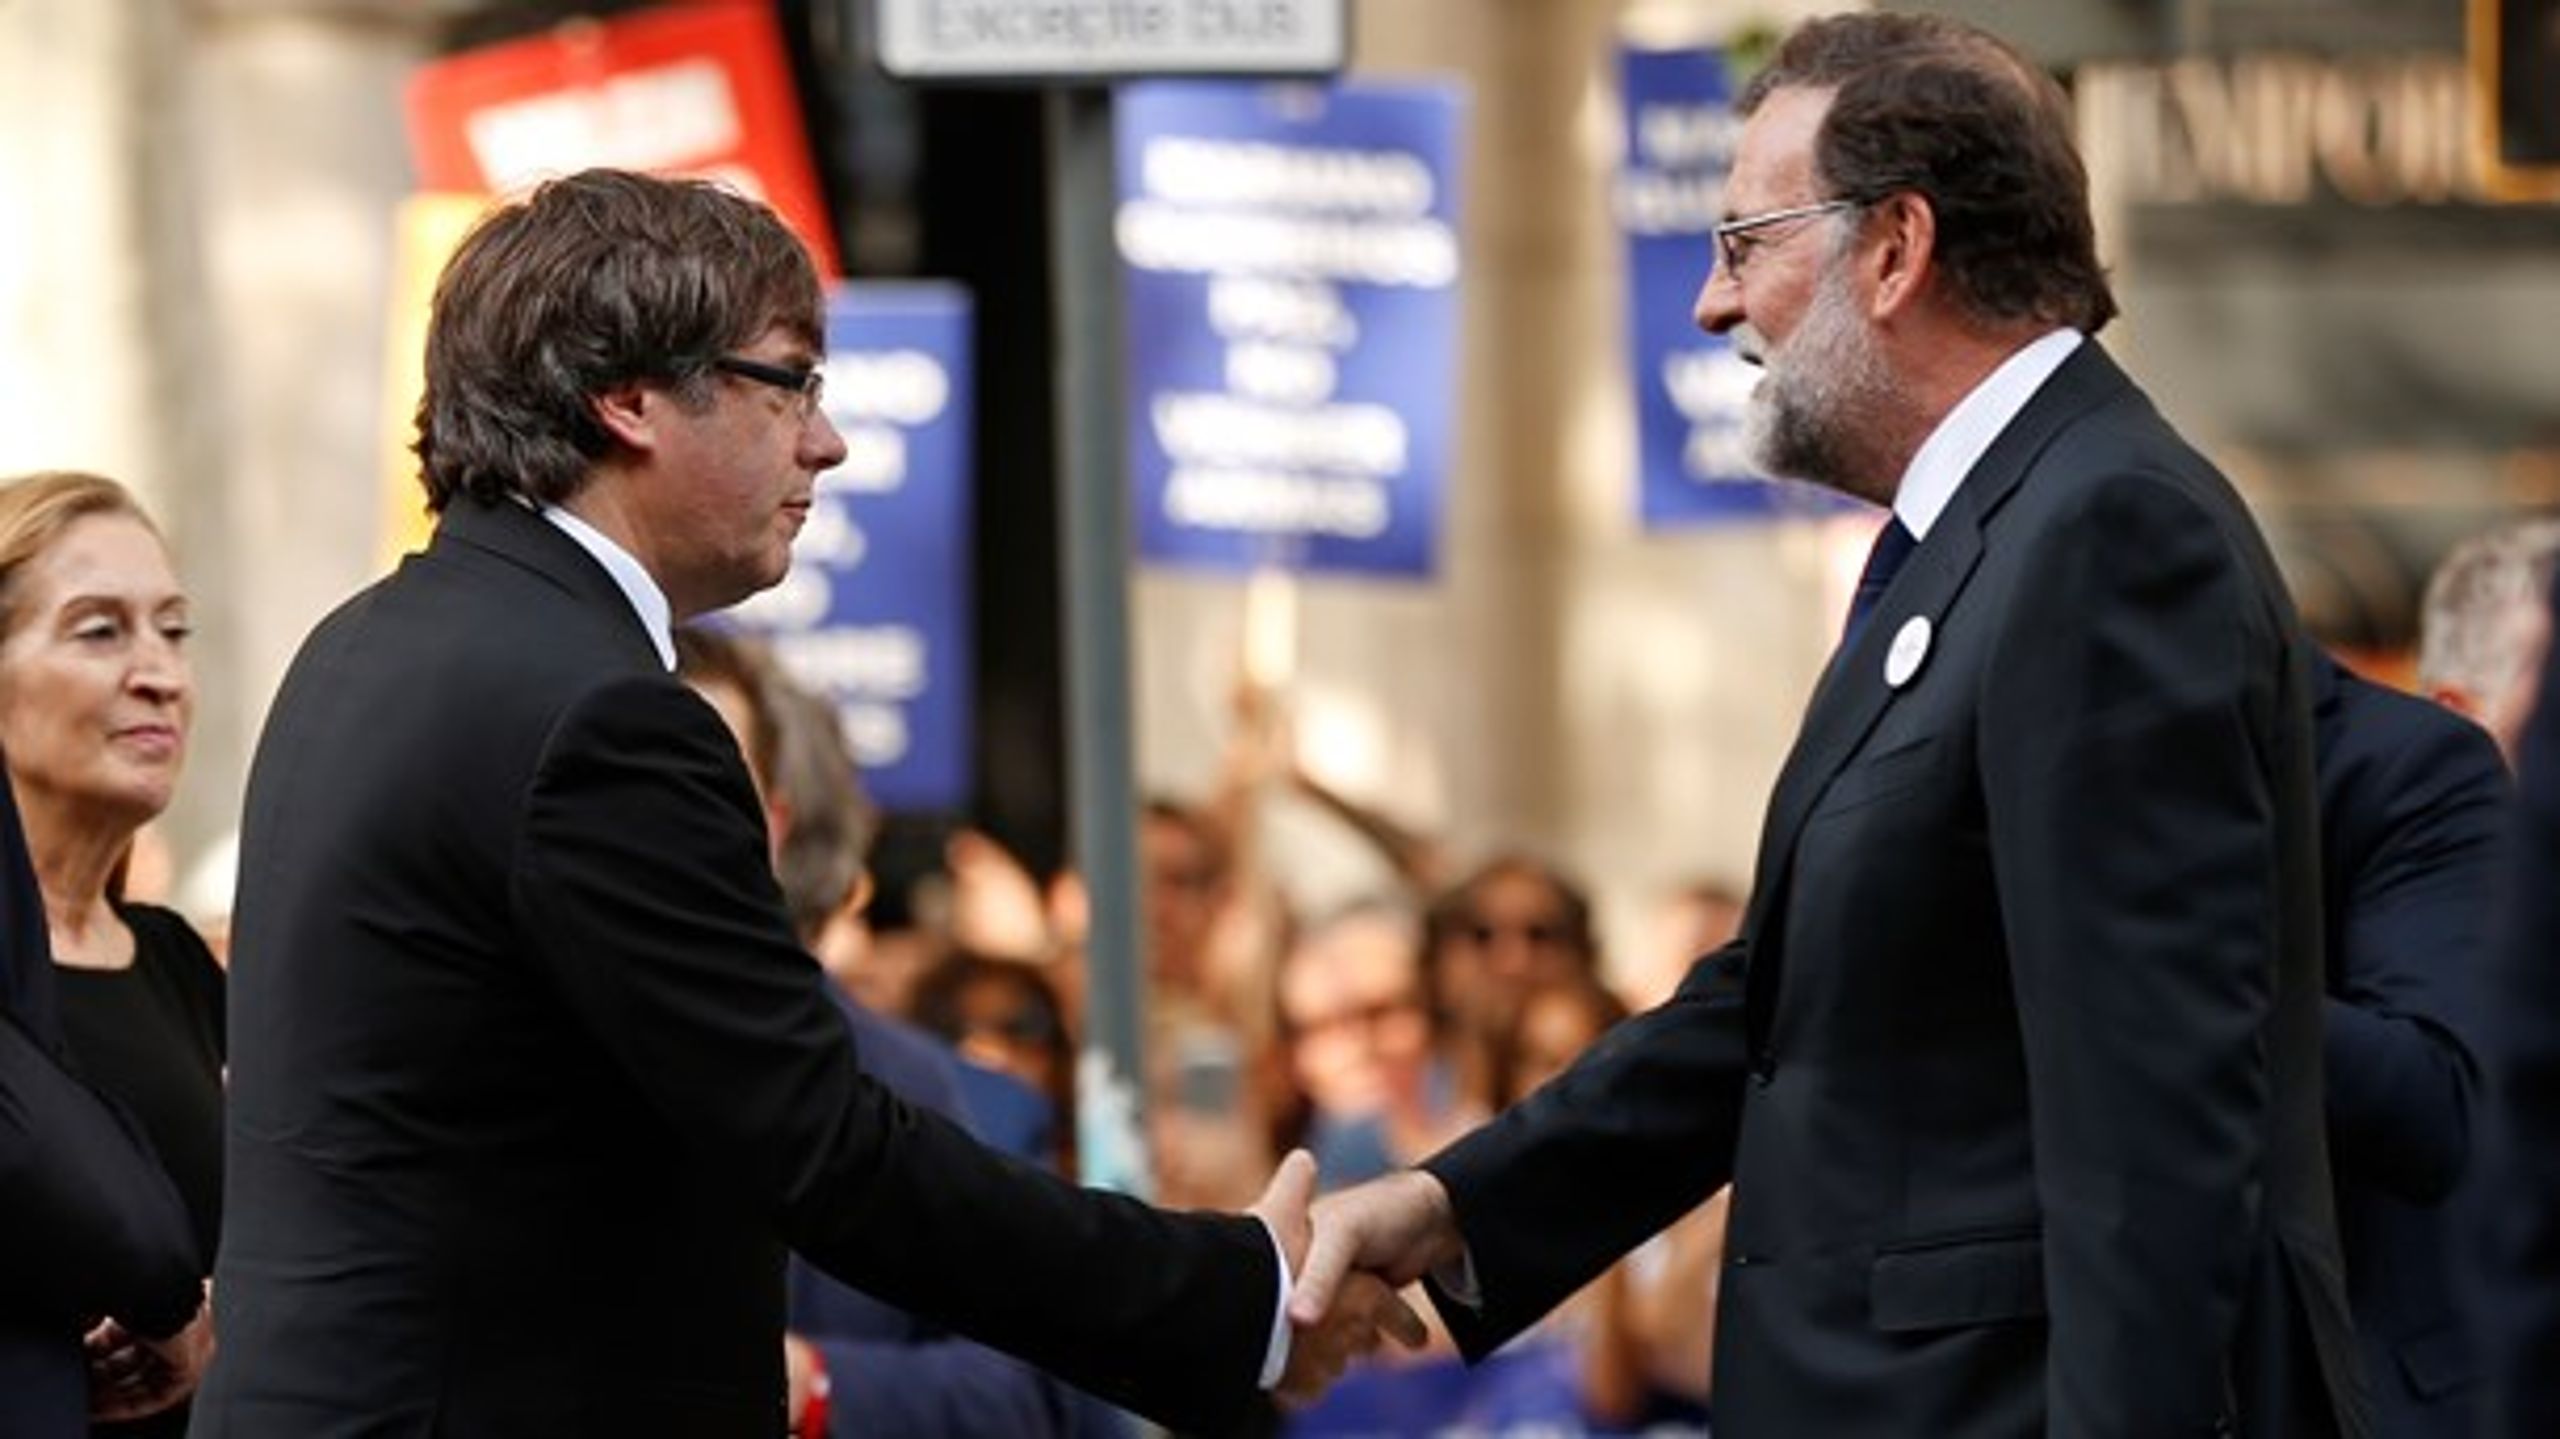 <b>FÅ HJÆLP</b>: Den afsatte catalanske præsident, Carles Puigdemont (t.v.), og Spaniens præsident Mariano Rajoy kunne godt trænge til noget ekstern mægling, forslår David Trads.